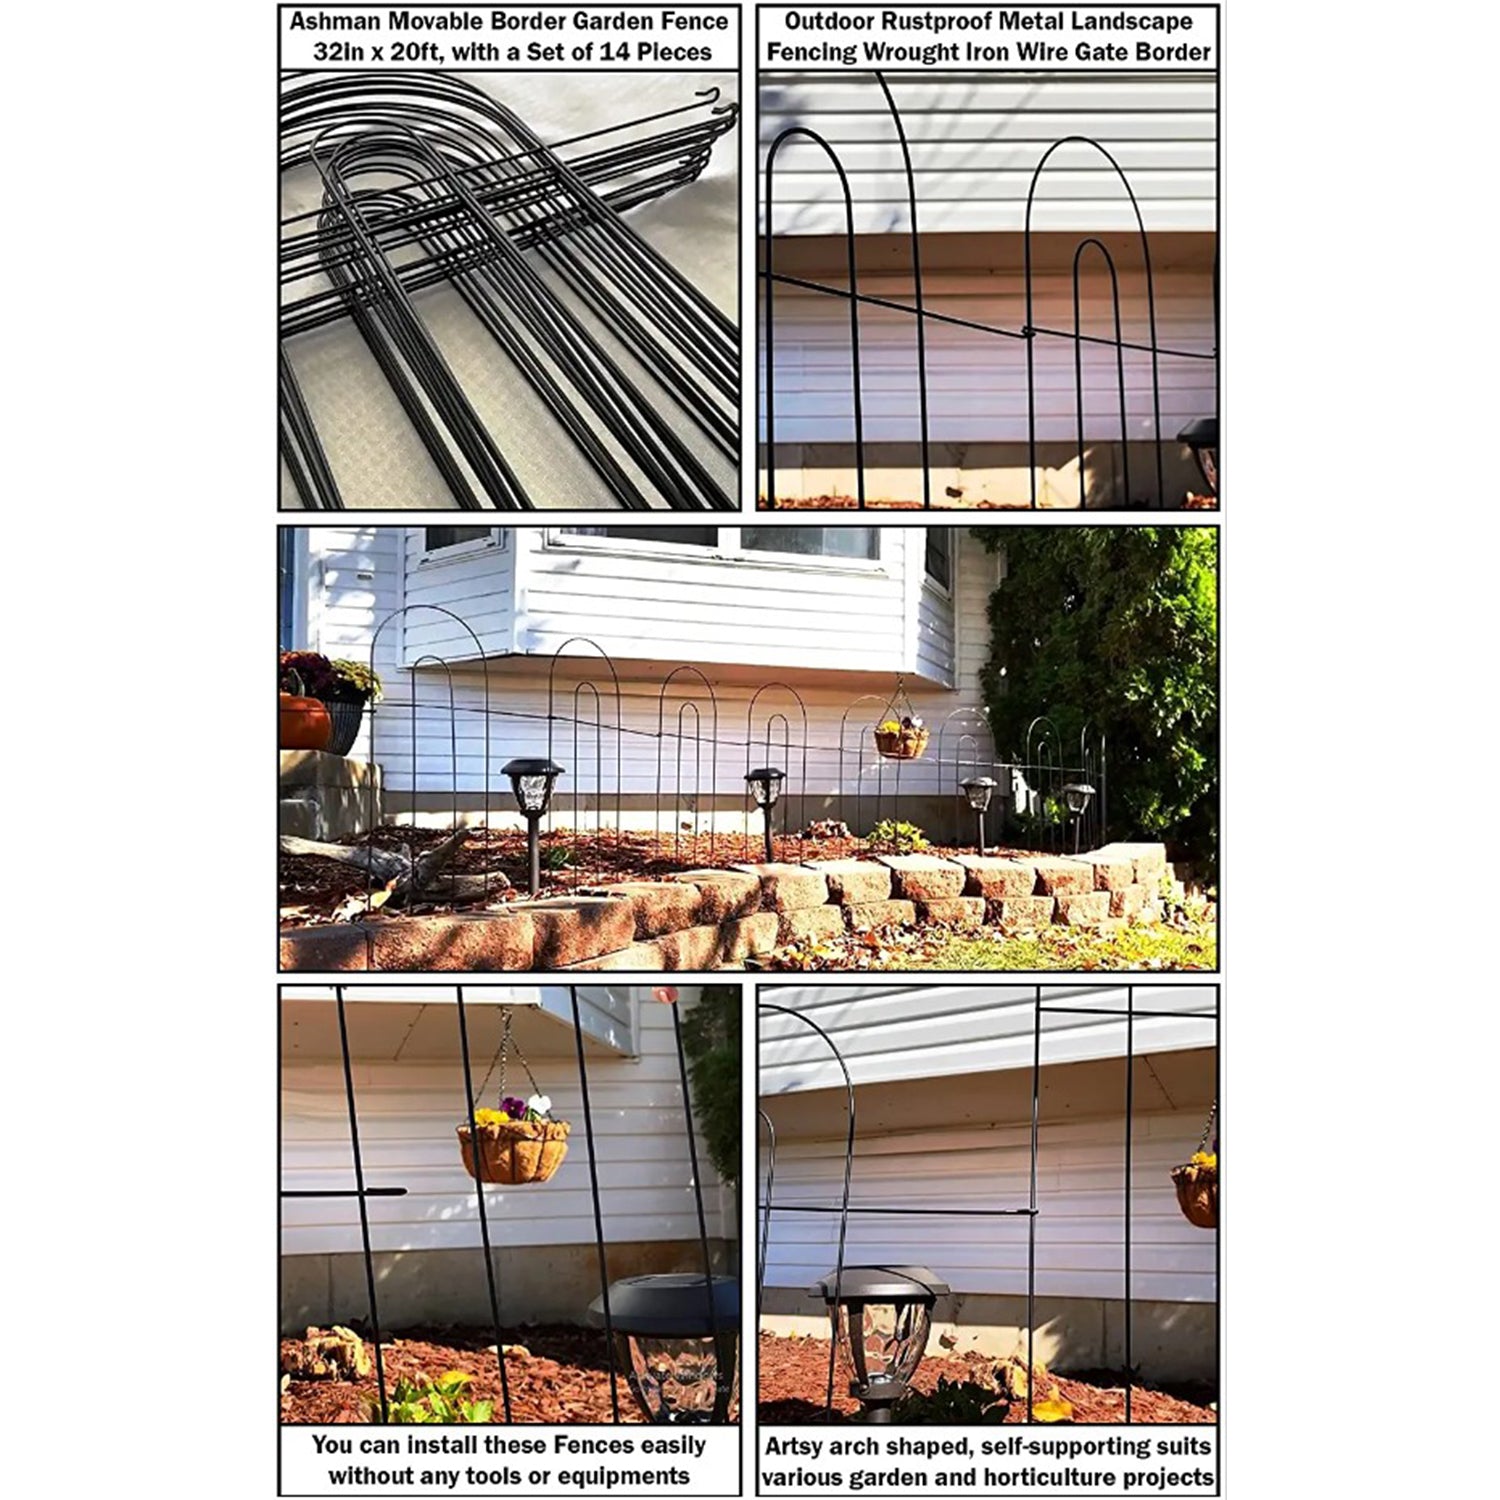 Ashman Galvanized Garden Fence 32in x 20ft Outdoor Rustproof Metal Lan